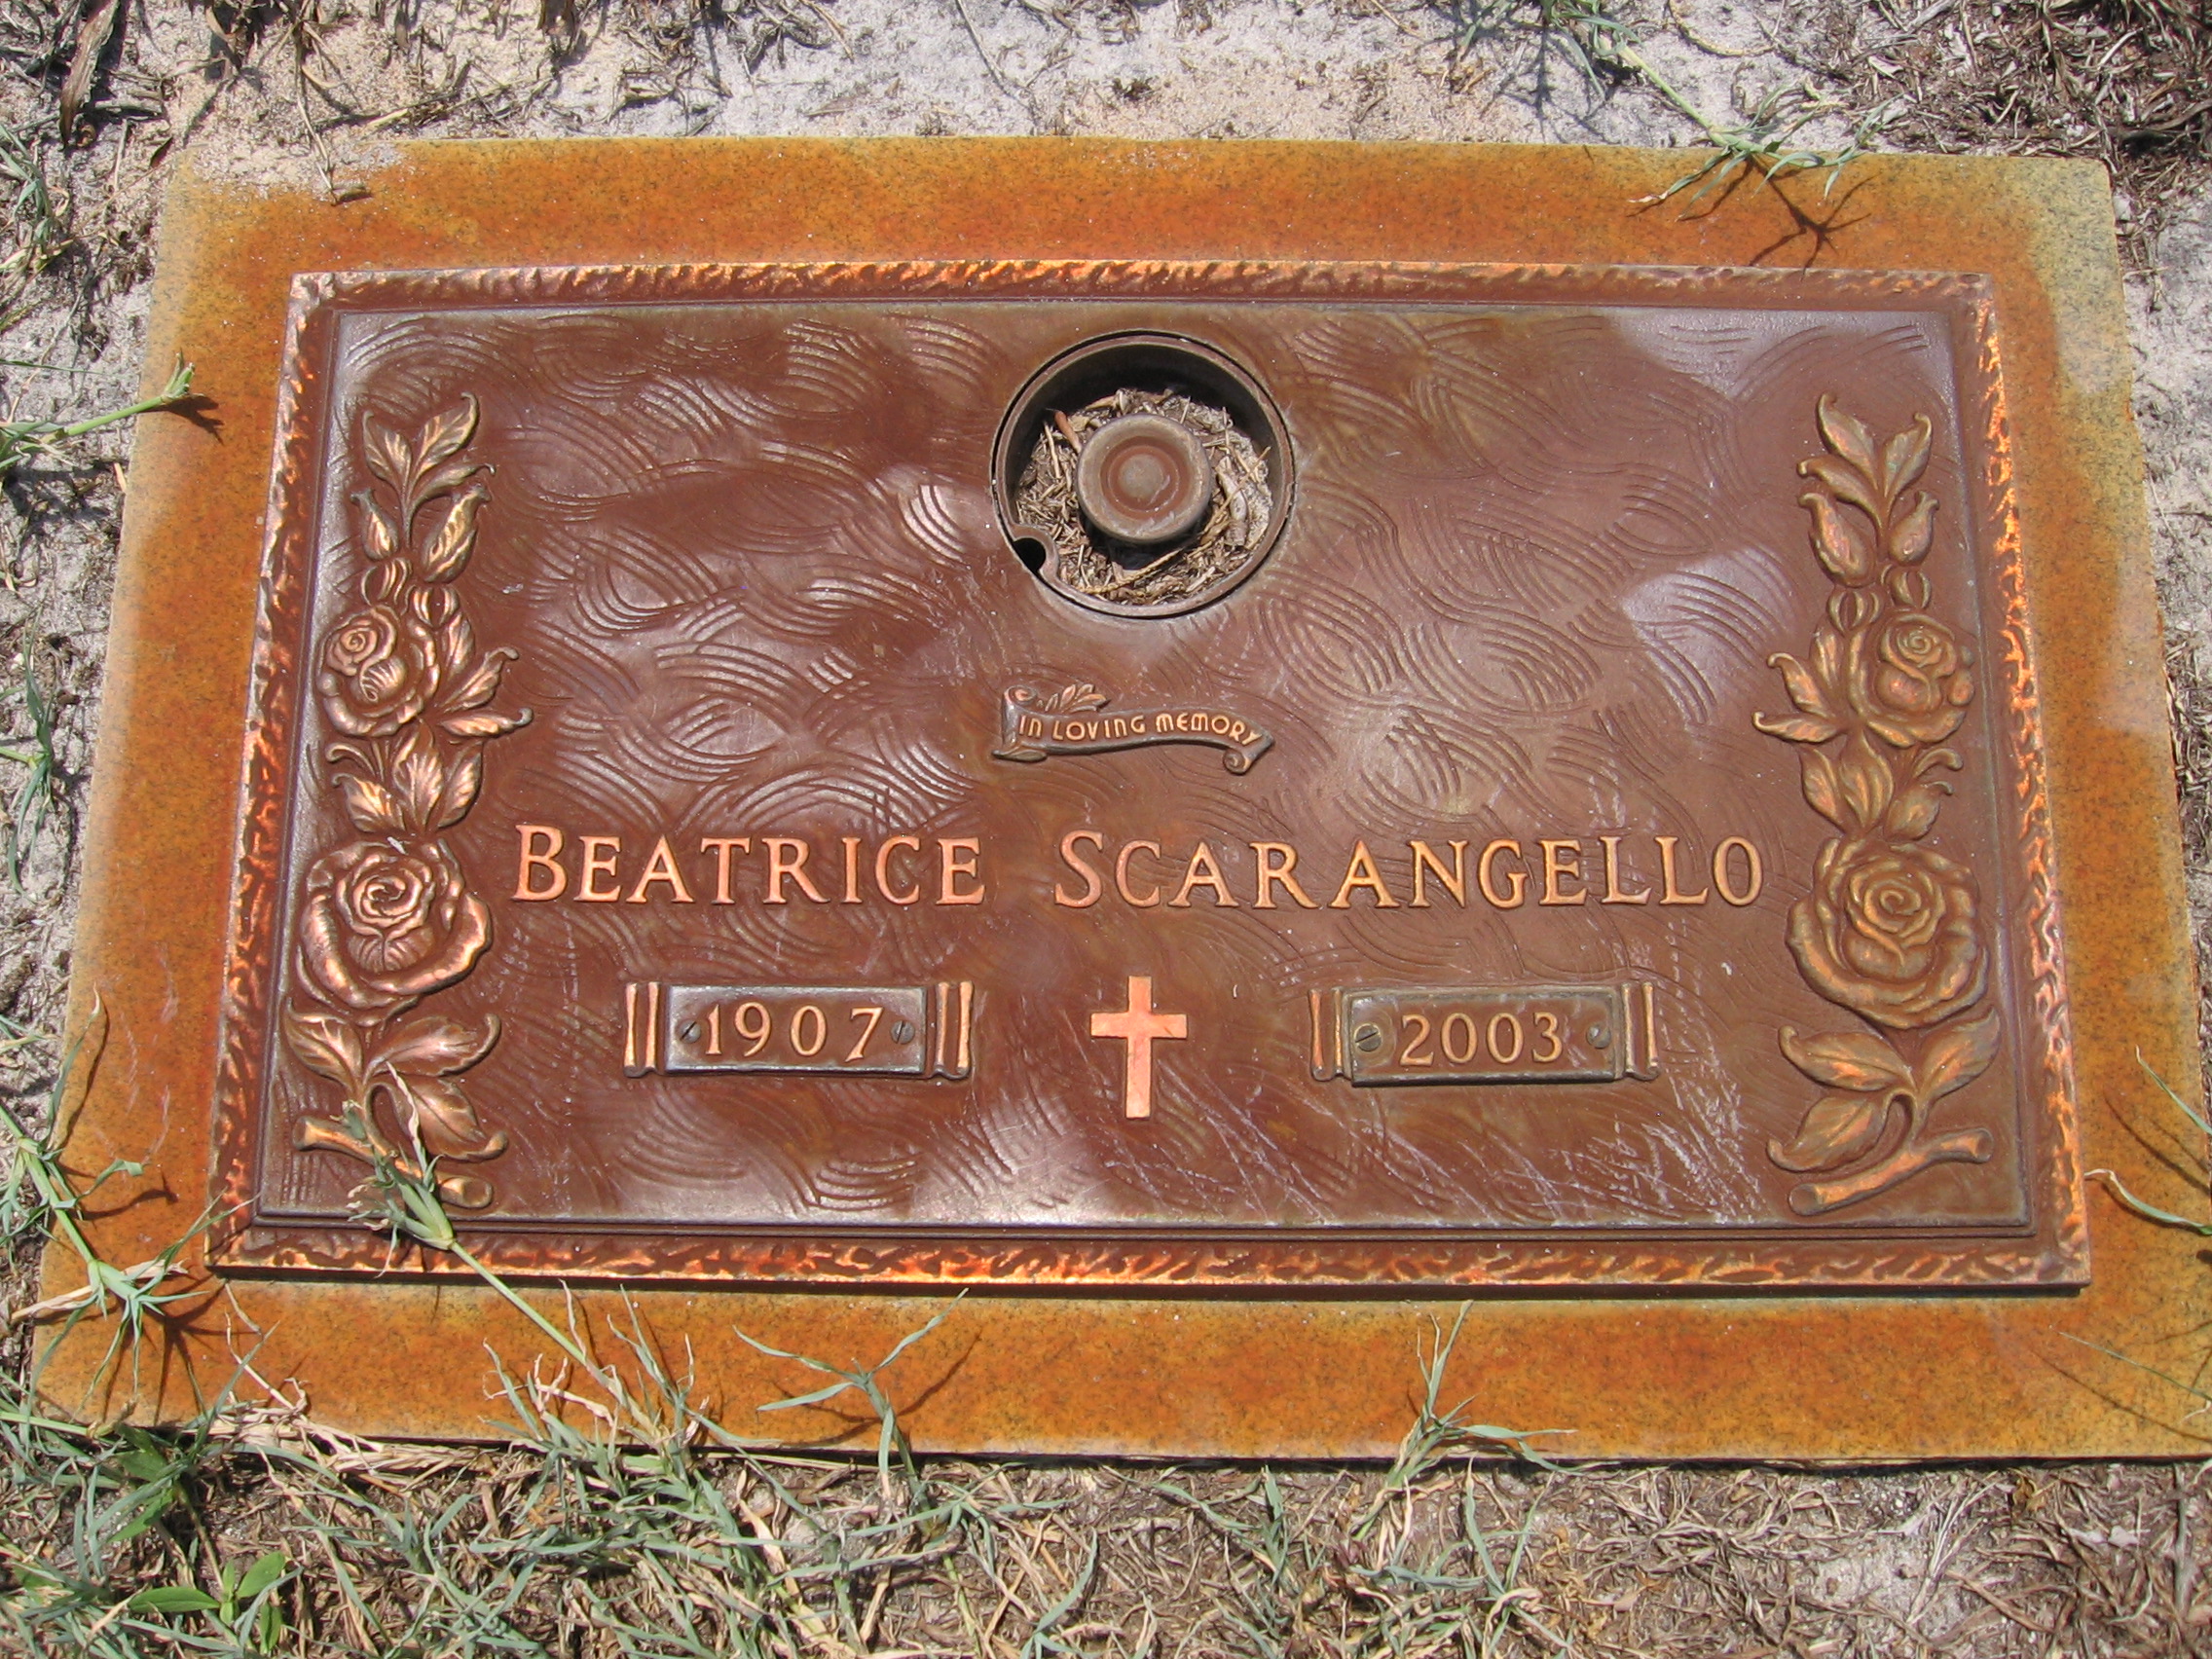 Beatrice Scarangello